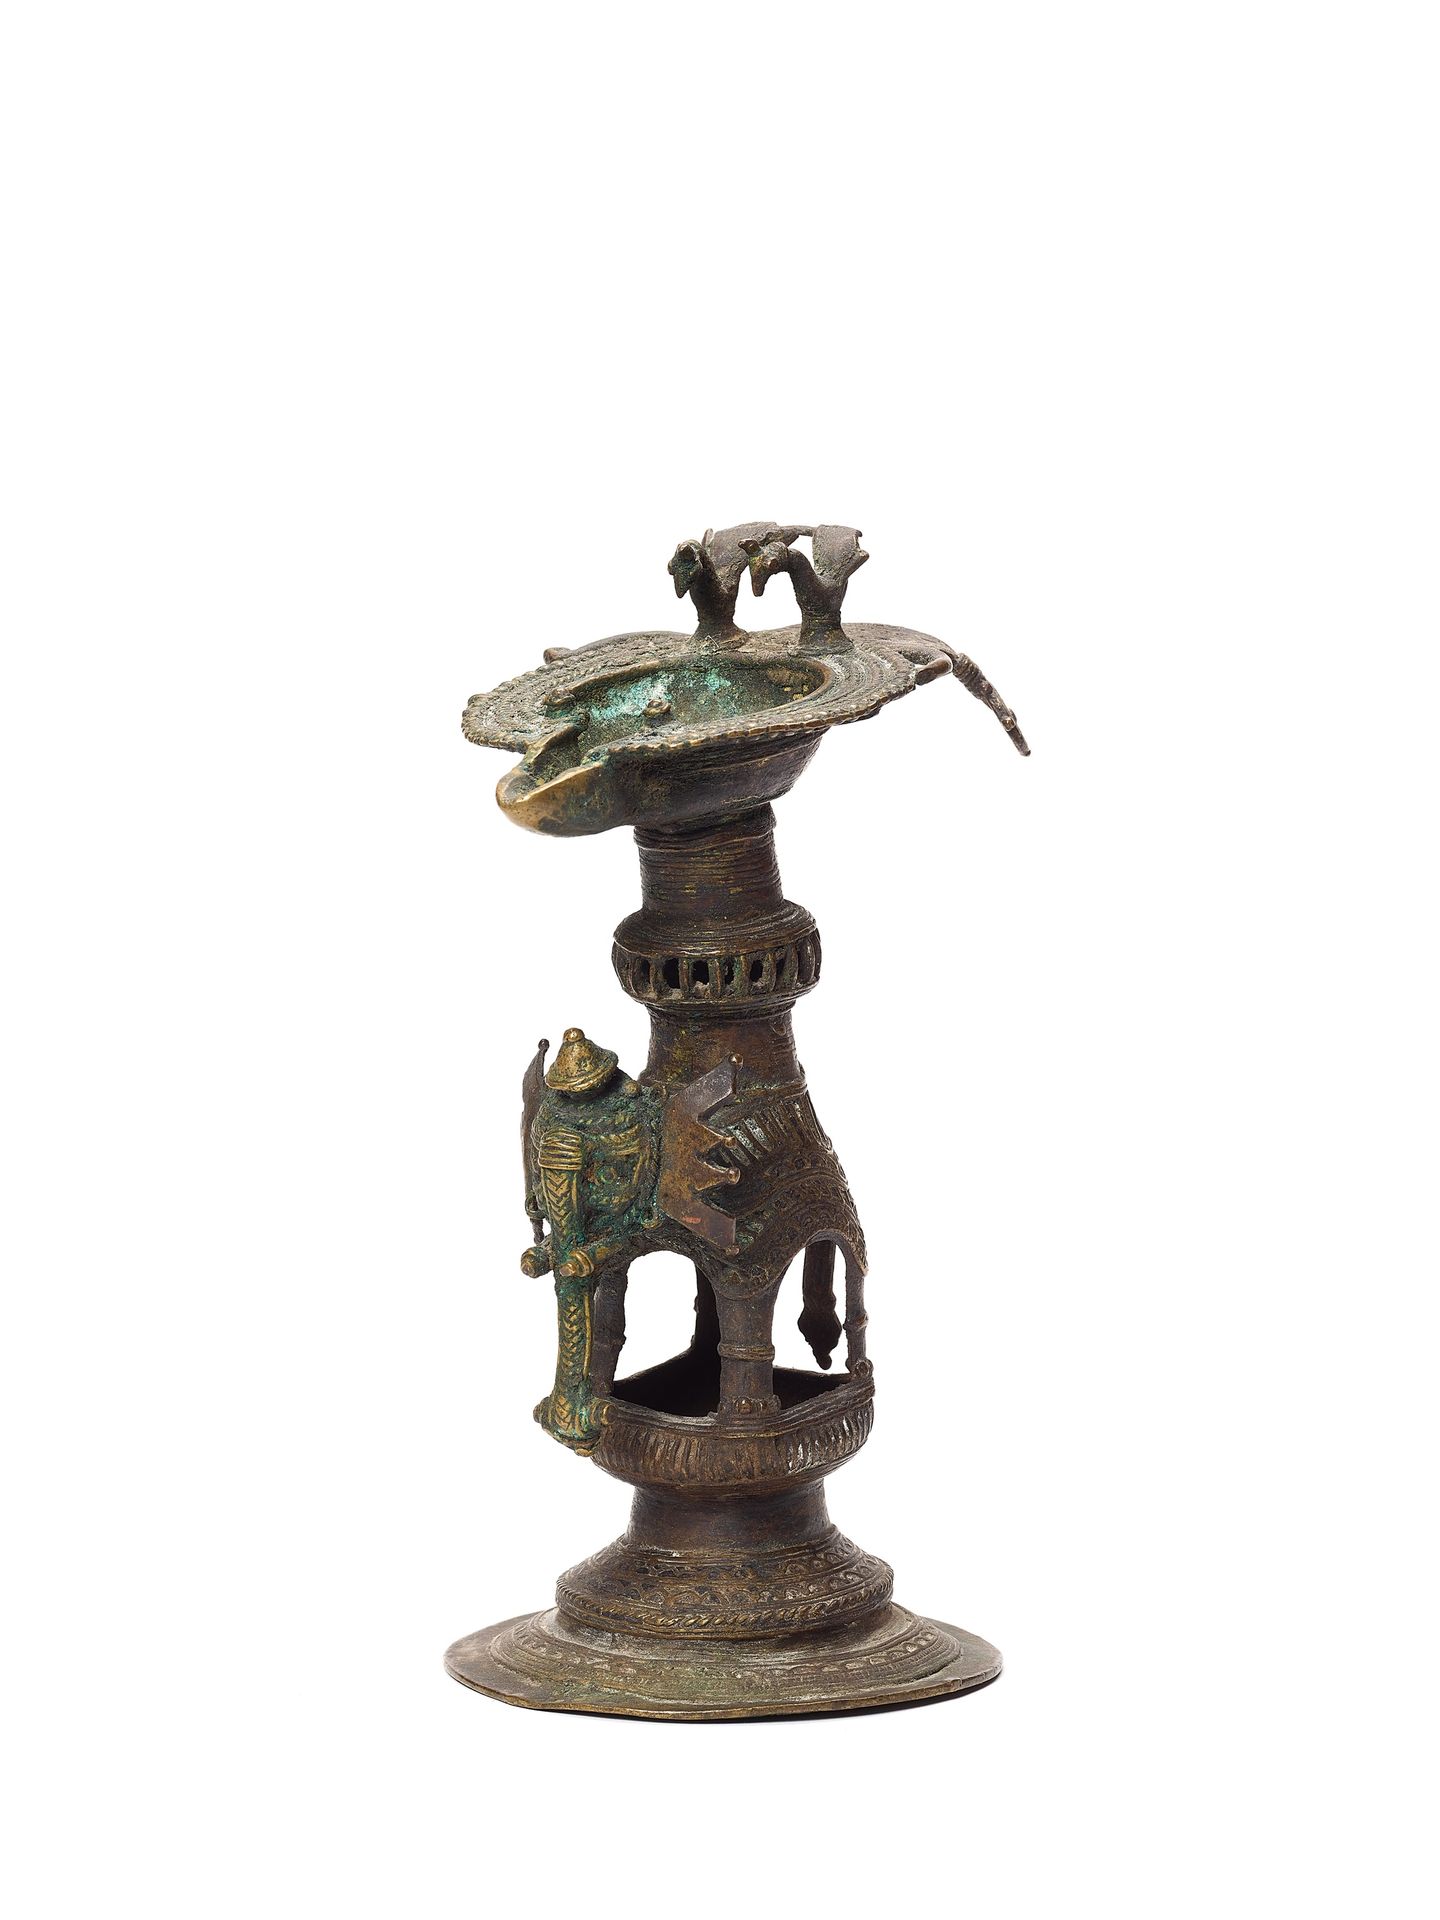 A RARE BASTAR BRONZE ELEPHANT BASE OIL LAMP 一个罕见的铜制大象底座油灯
印度，19-20世纪。一个神话般的Basta&hellip;